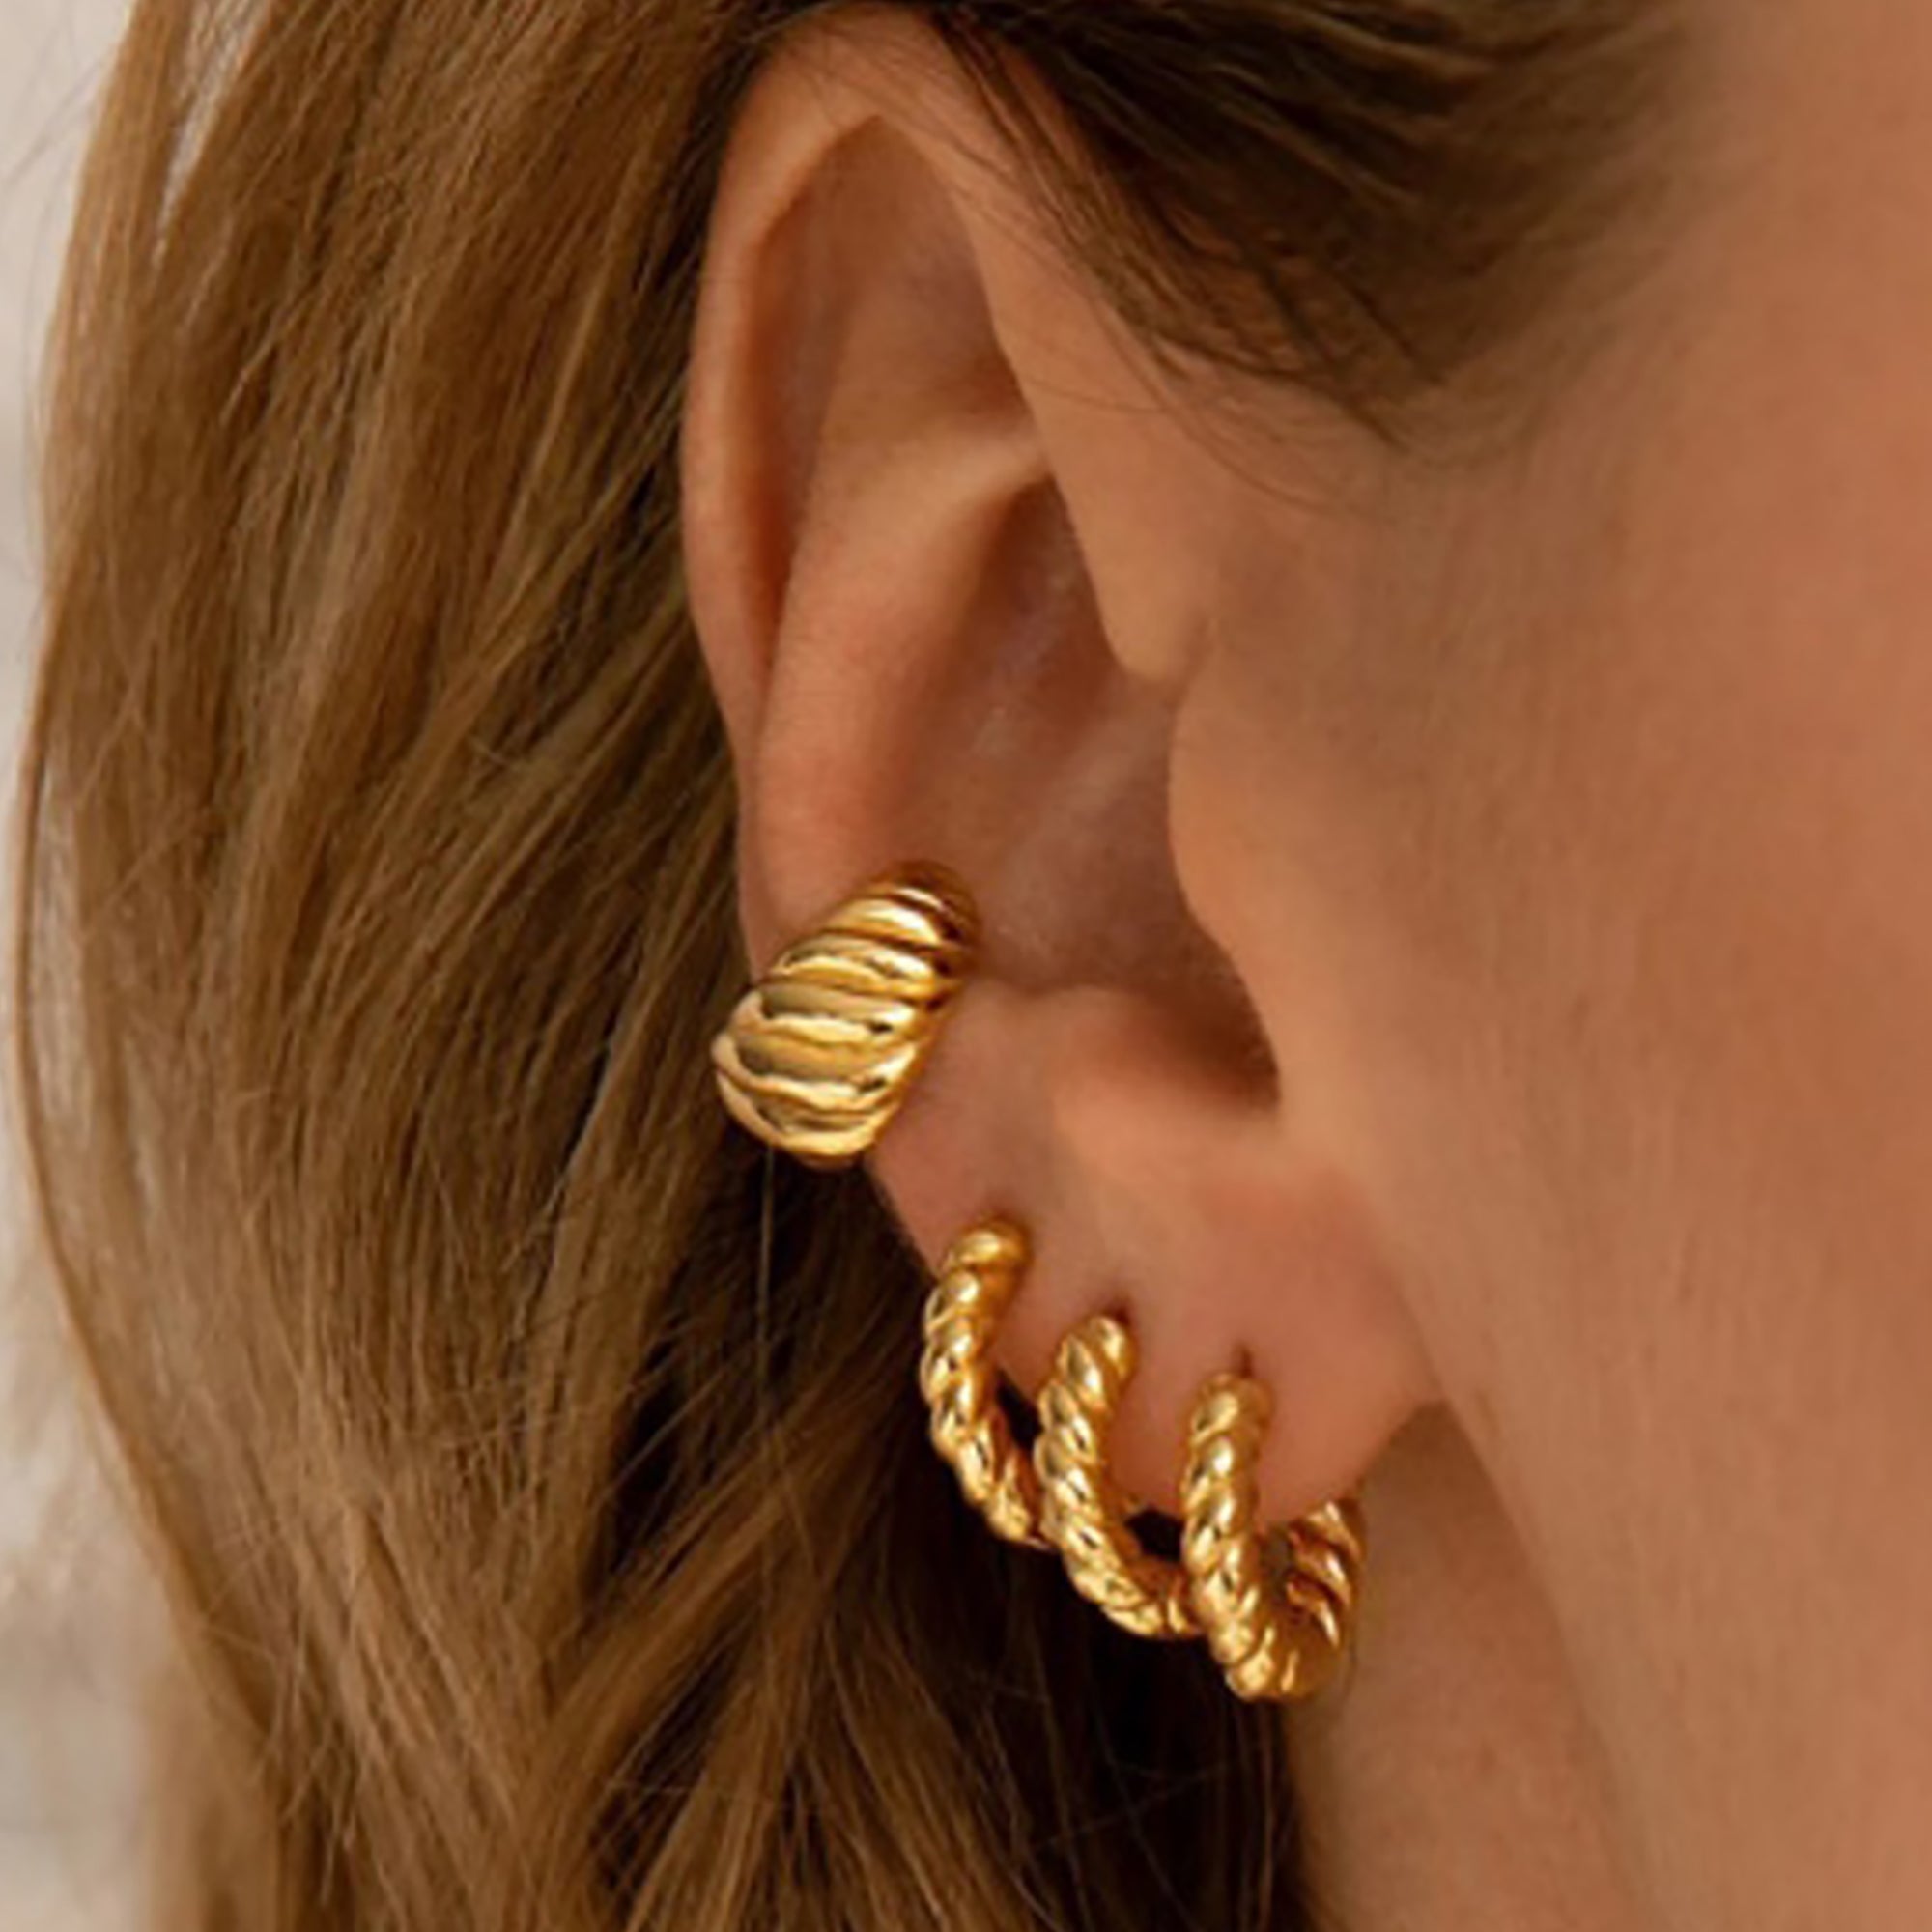 18K Gold Plated Swirl Ear Cuf / Hoop Earrings Active